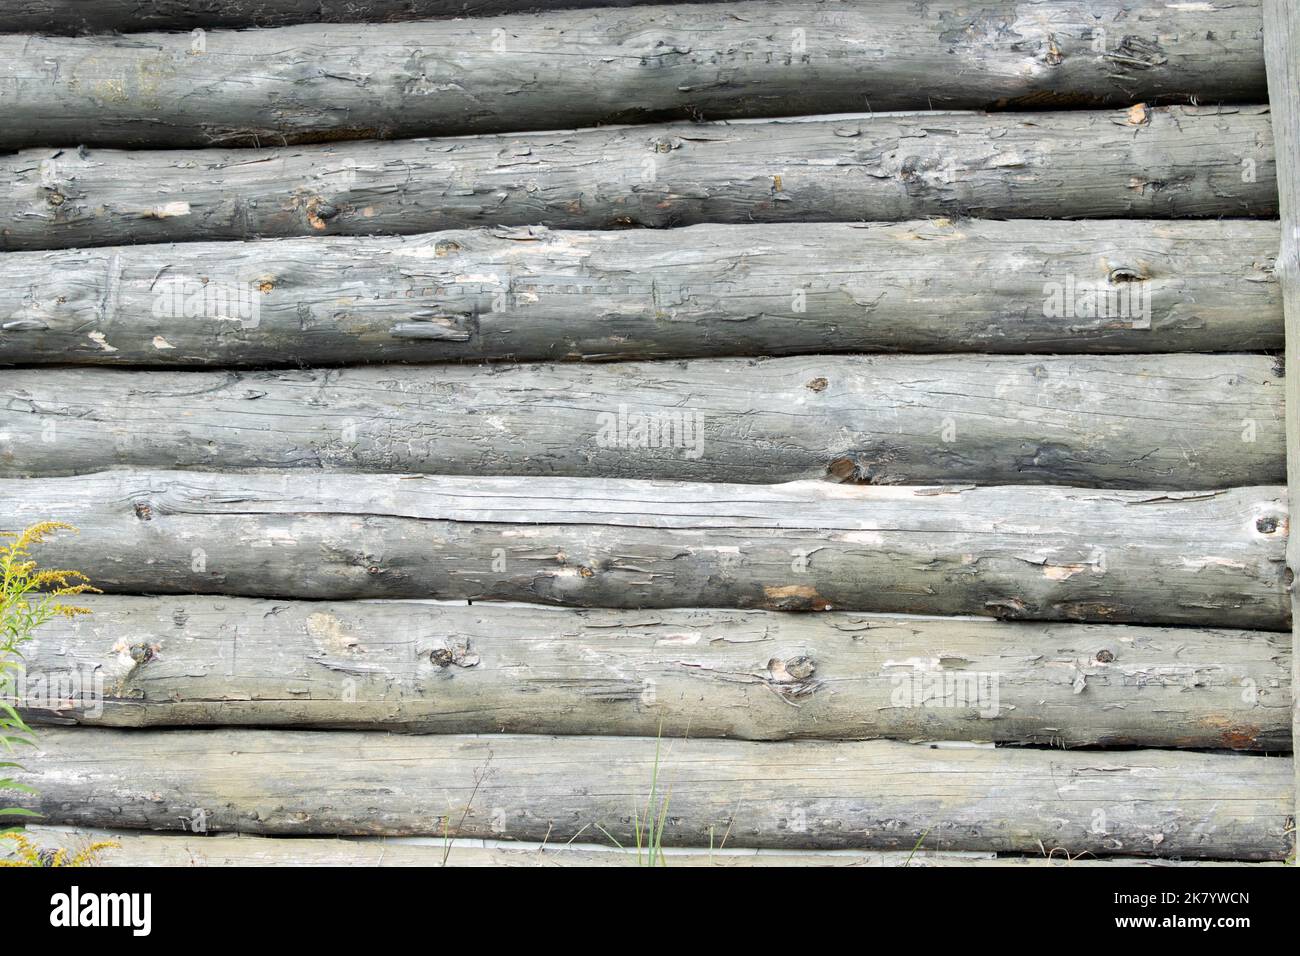 Coeur en osier tissé accroché au mur en bois de la vieille ferme. Photo de haute qualité Banque D'Images